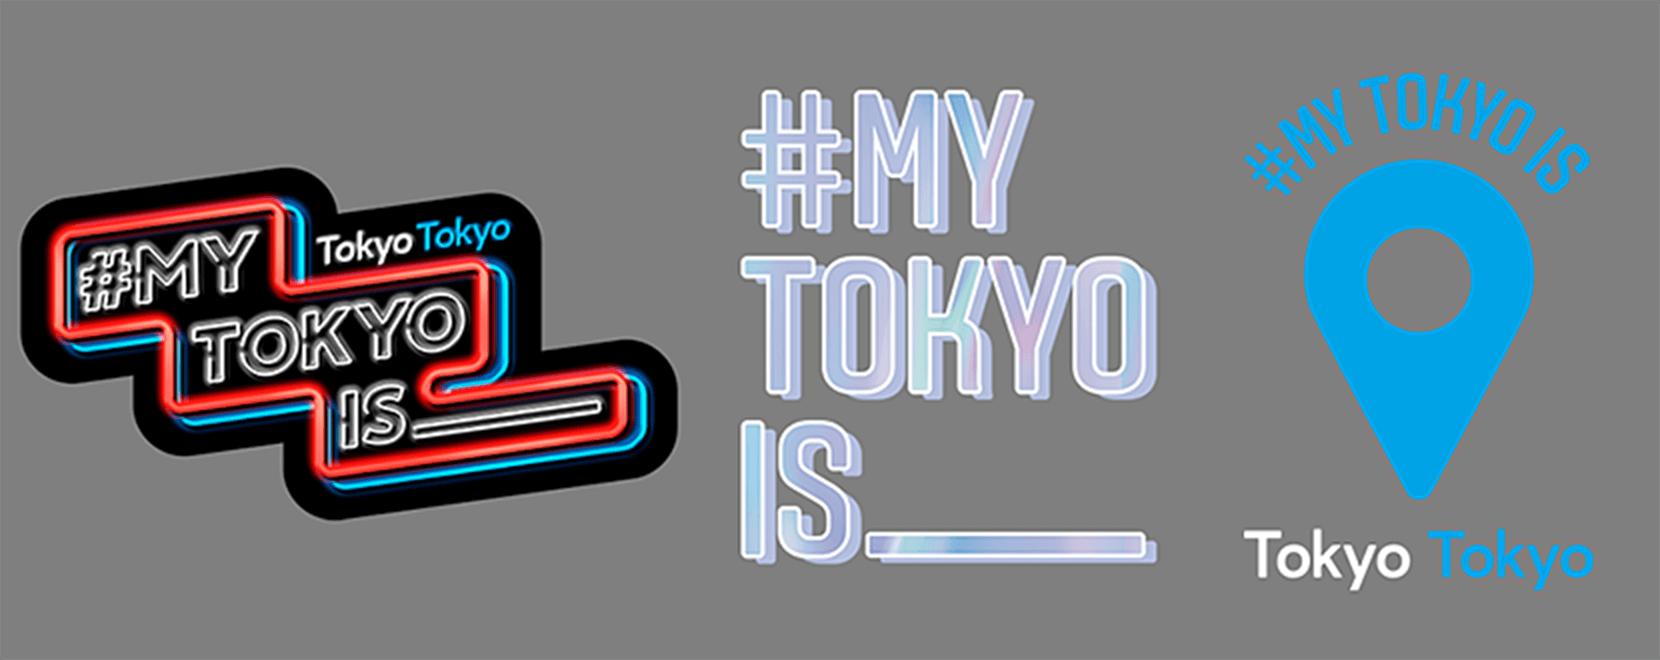 東京都とInstagramの共同キャンペーン イメージ2